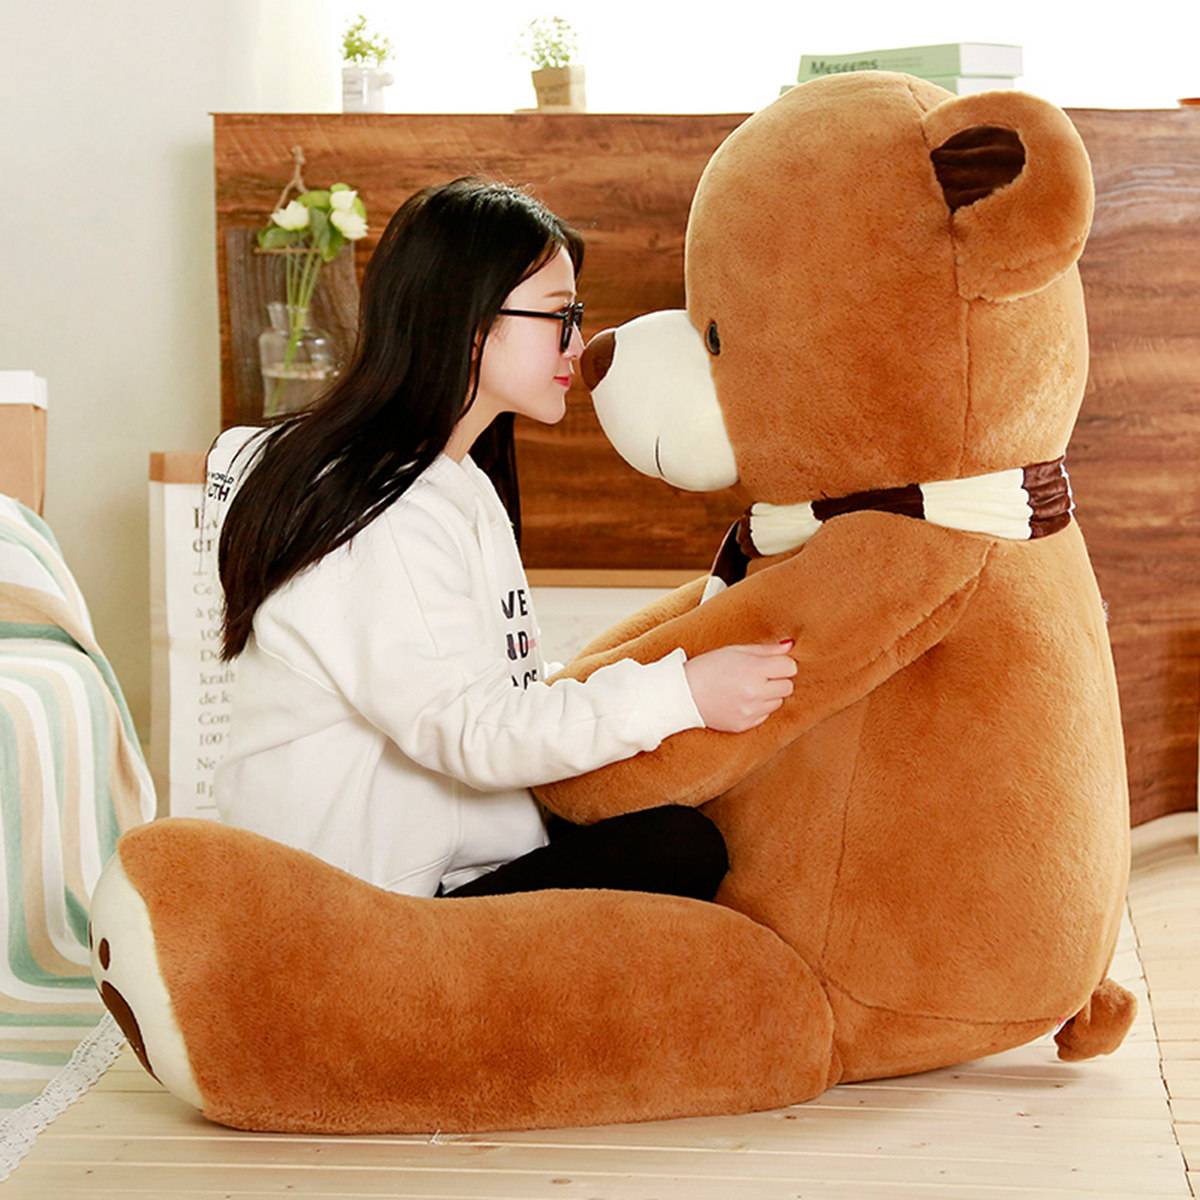 Giant Teddy Bear Plush Toys Stuffed Animals Soft Kawaii Scarf Heart Bear Hold Pillow